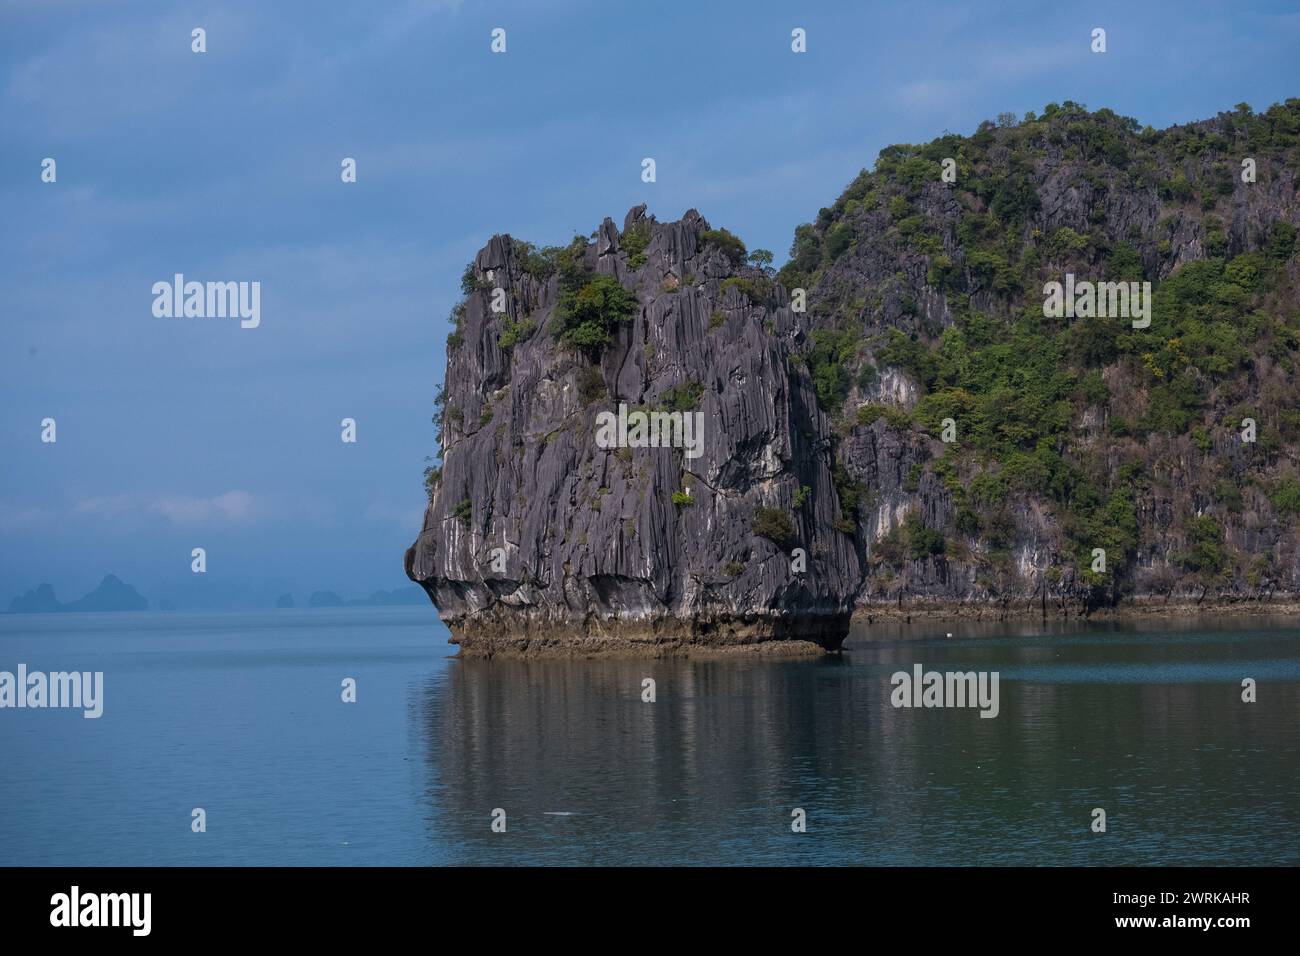 Un'isola carsica di pietra calcarea emerge dalle acque smeraldo della baia di ha Long, in Vietnam. L'isola è una vista spettacolare, con le sue scogliere a strapiombo che si innalzano a centinaia di metri Foto Stock